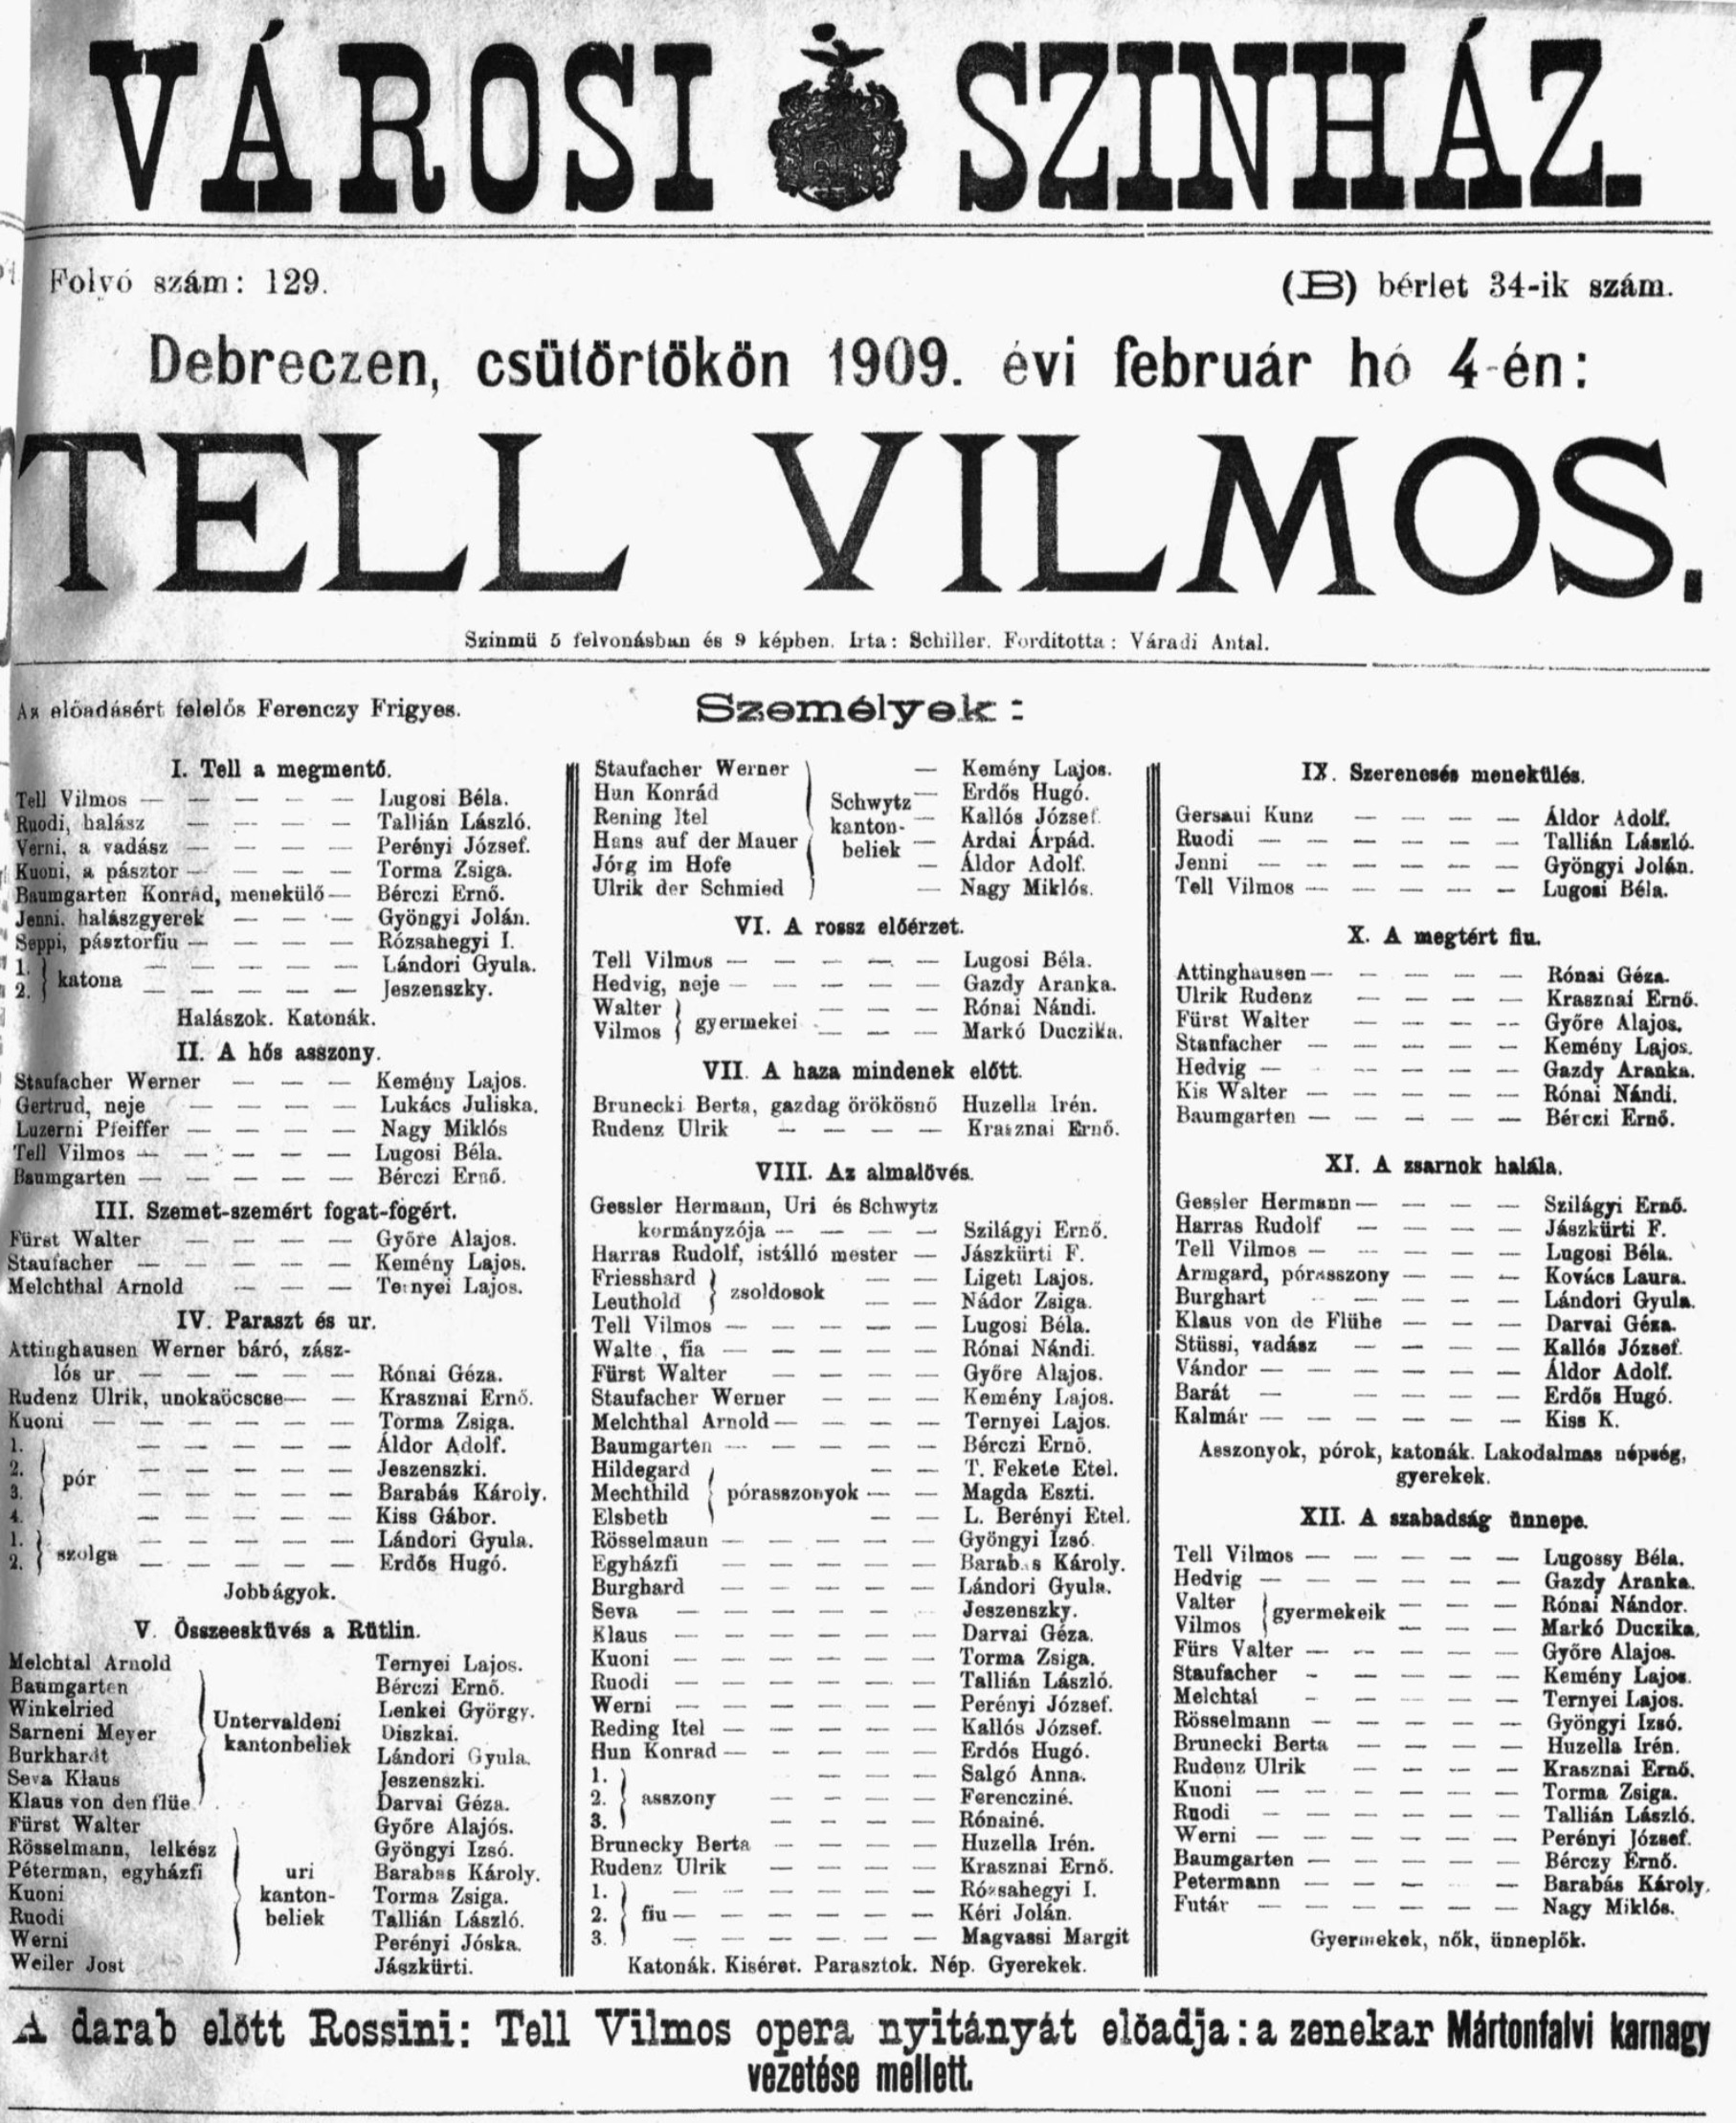 1909.02.4 - tell vilmos